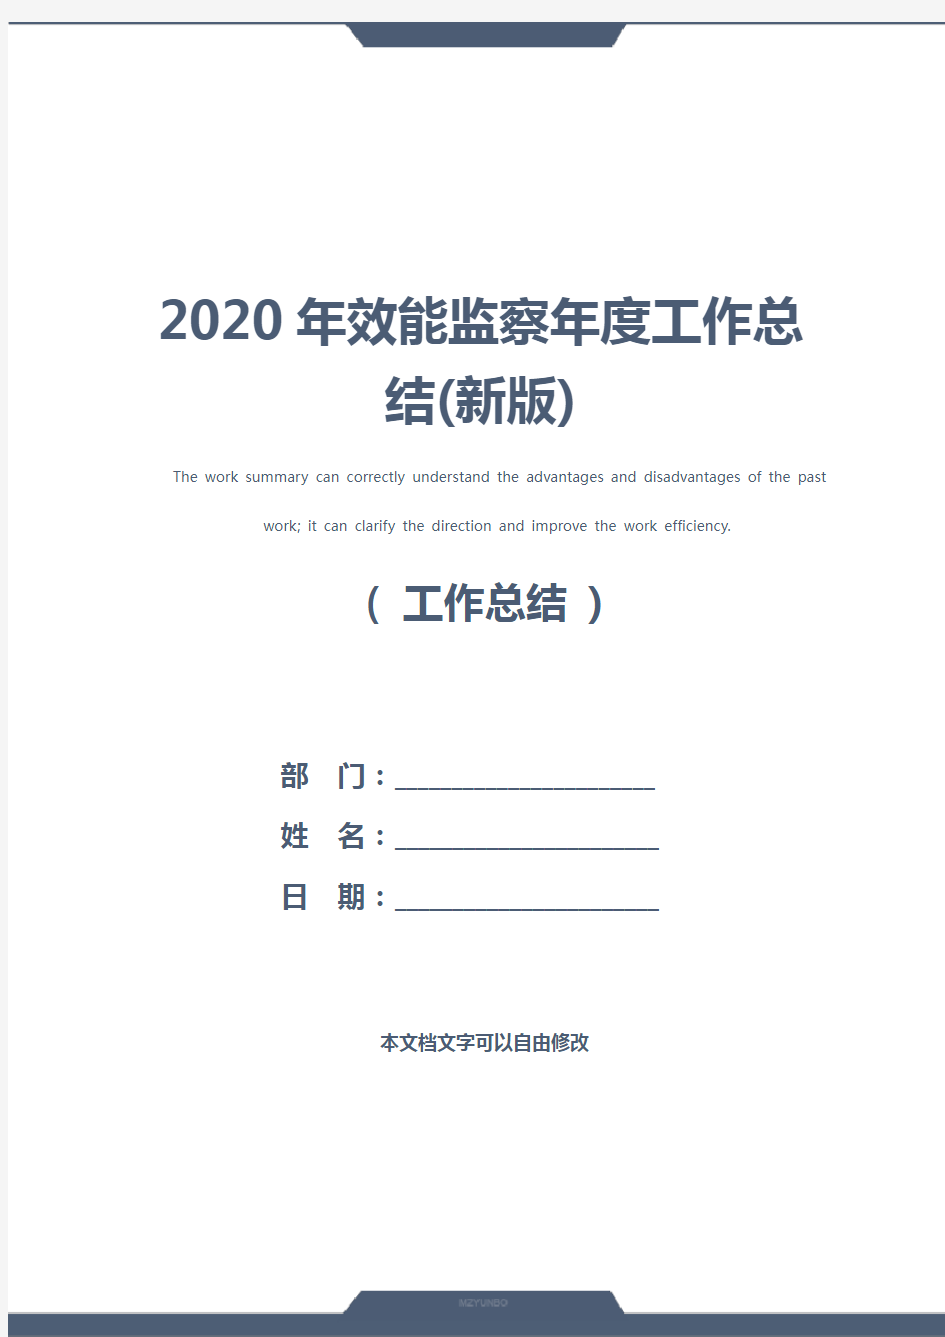 2020年效能监察年度工作总结(新版)